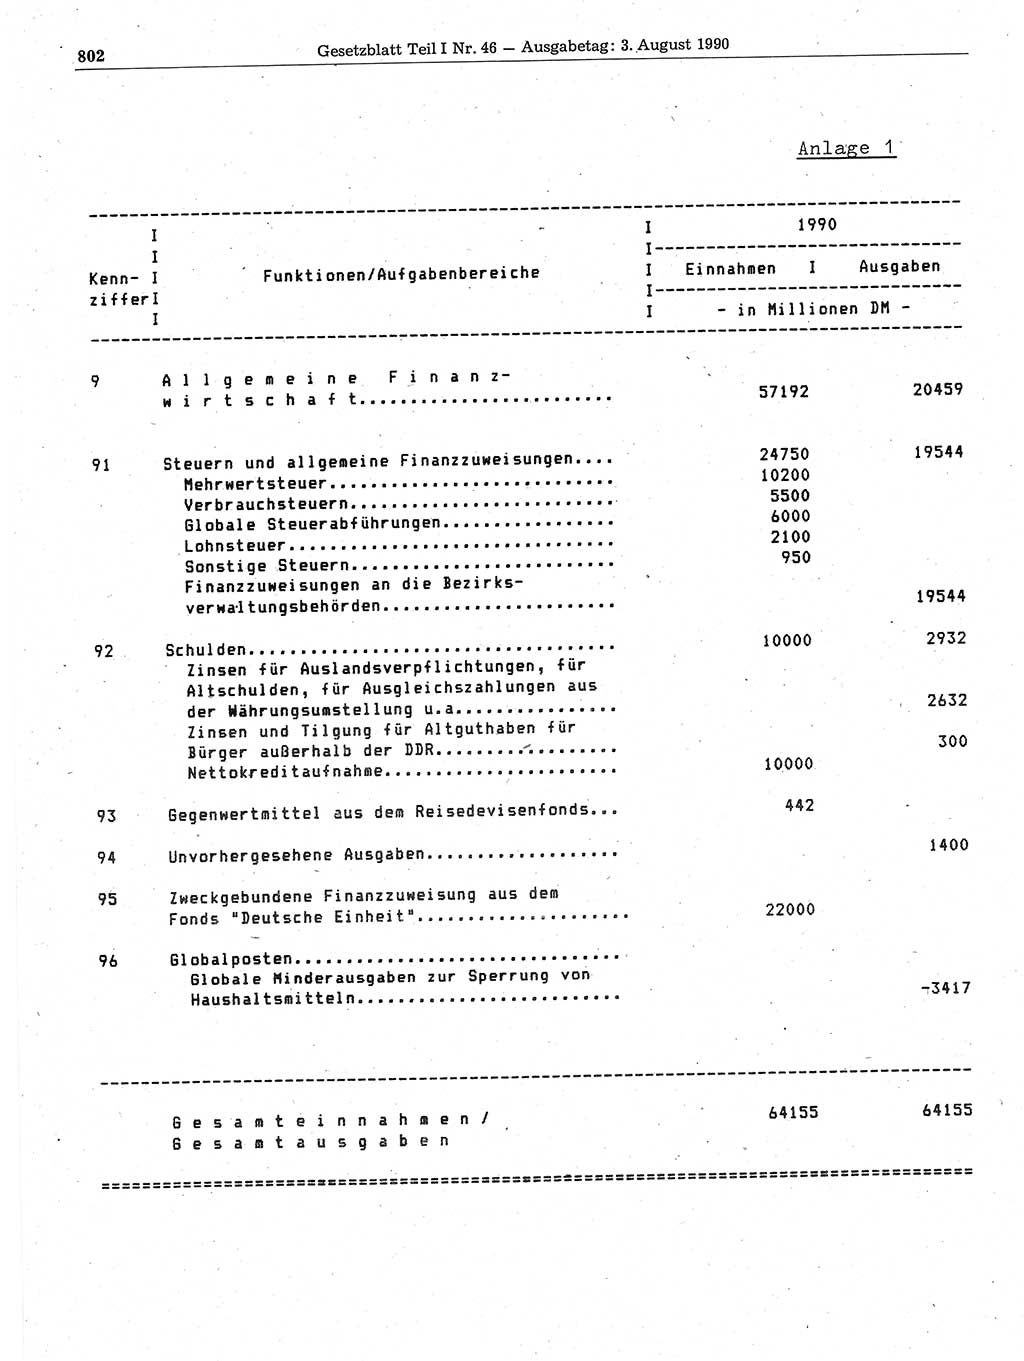 Gesetzblatt (GBl.) der Deutschen Demokratischen Republik (DDR) Teil Ⅰ 1990, Seite 802 (GBl. DDR Ⅰ 1990, S. 802)